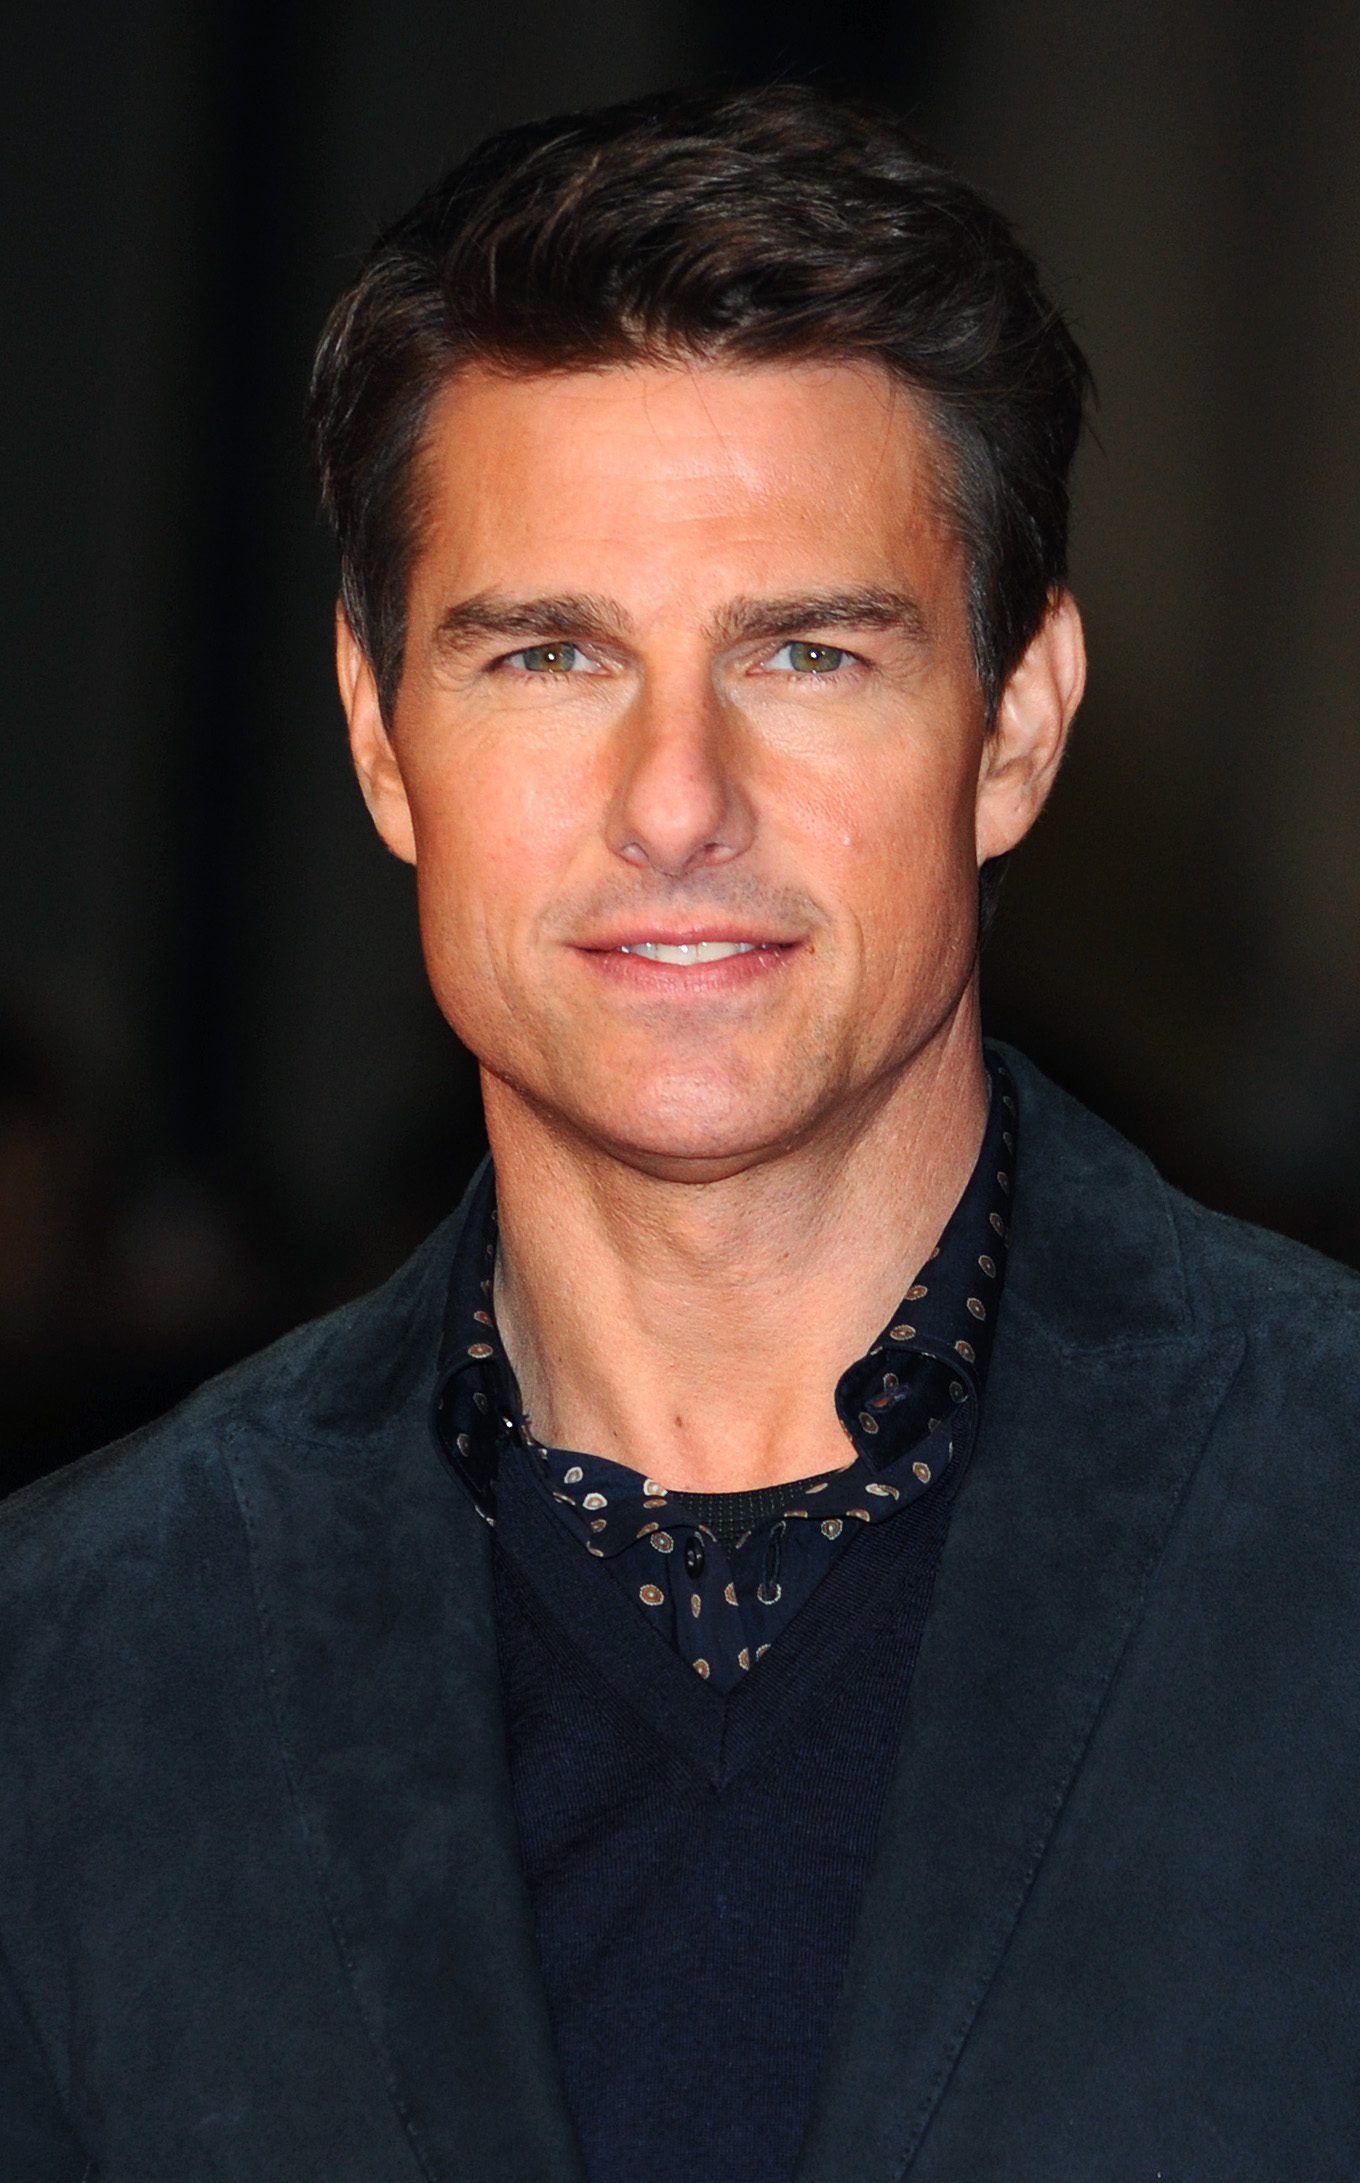 Tom Cruise assiste à la première de "Jack Reacher" le 10 décembre 2012 à Londres, Angleterre | Source : Getty Images